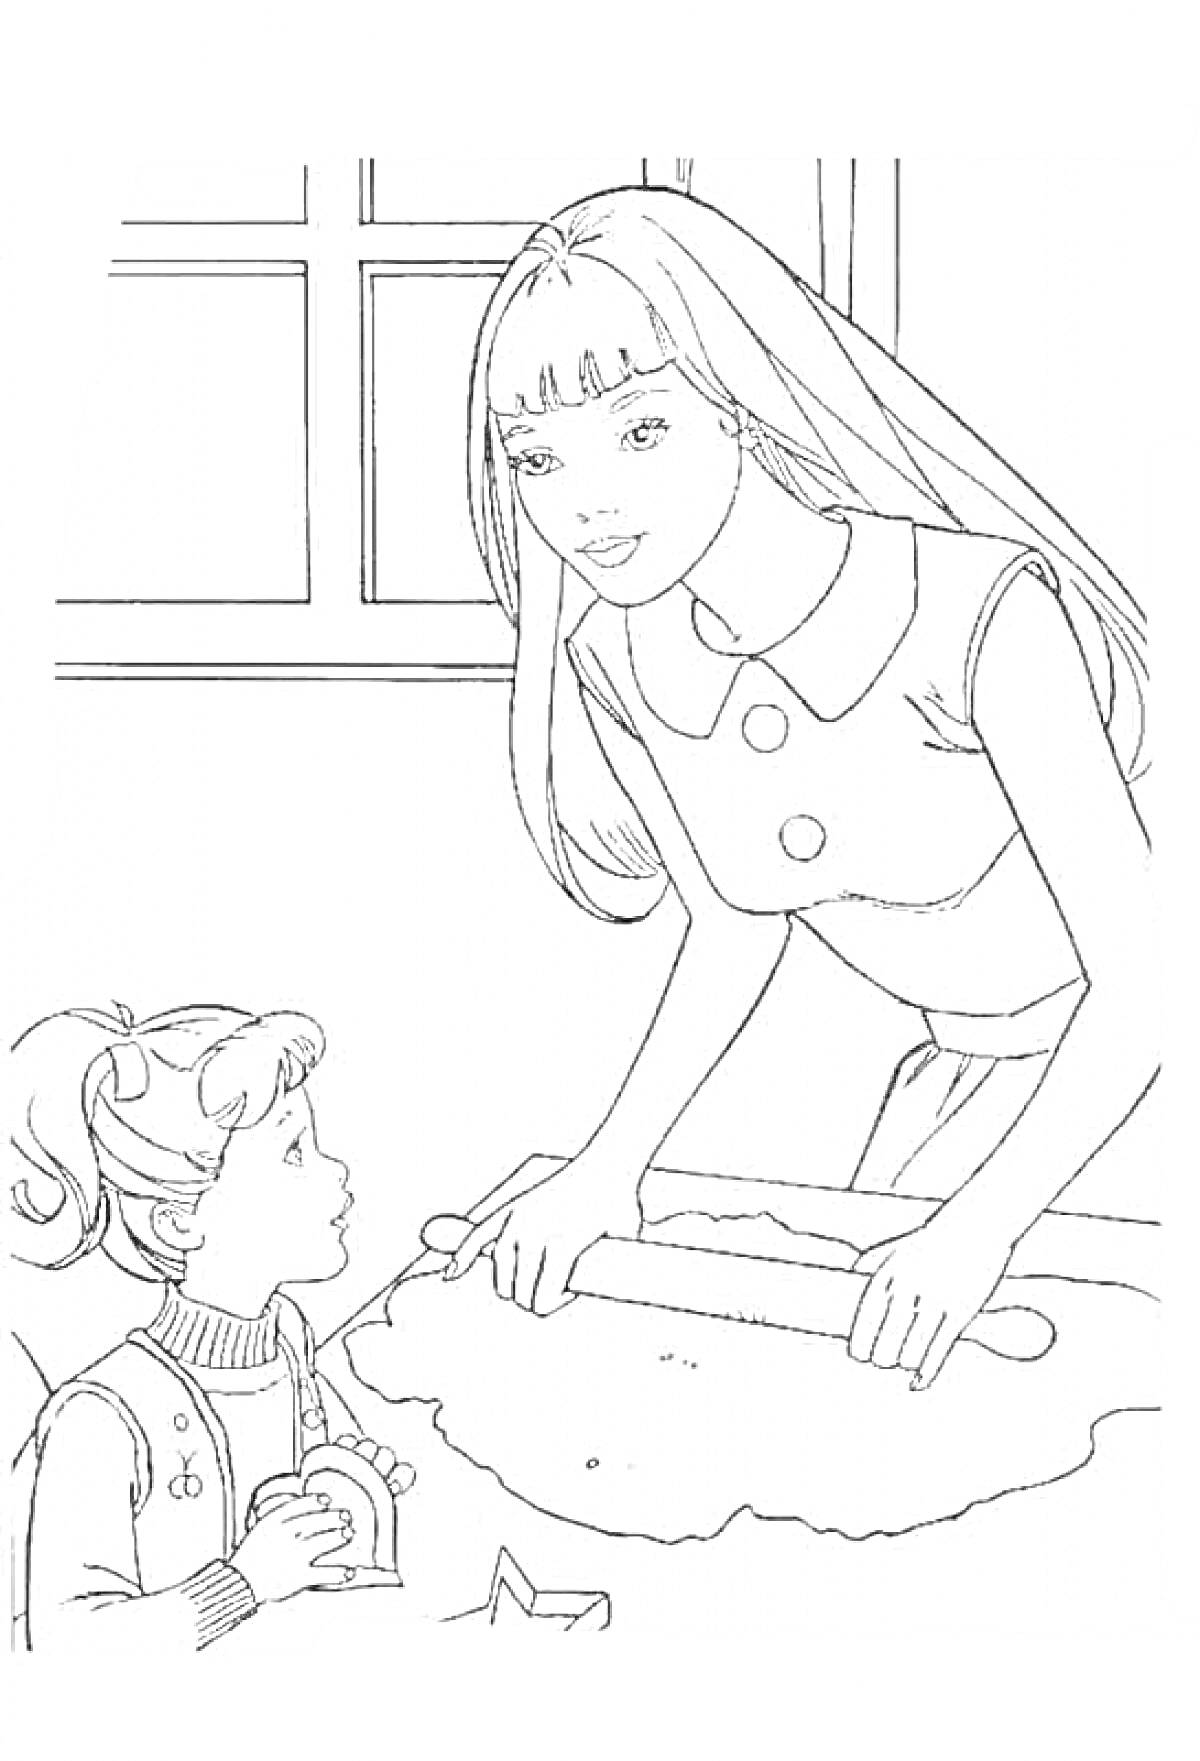 Раскраска Мама и дочка на кухне, дочка сидит за столом с печеньем, мама раскатывает тесто и смотрит на дочку, за ними окно.